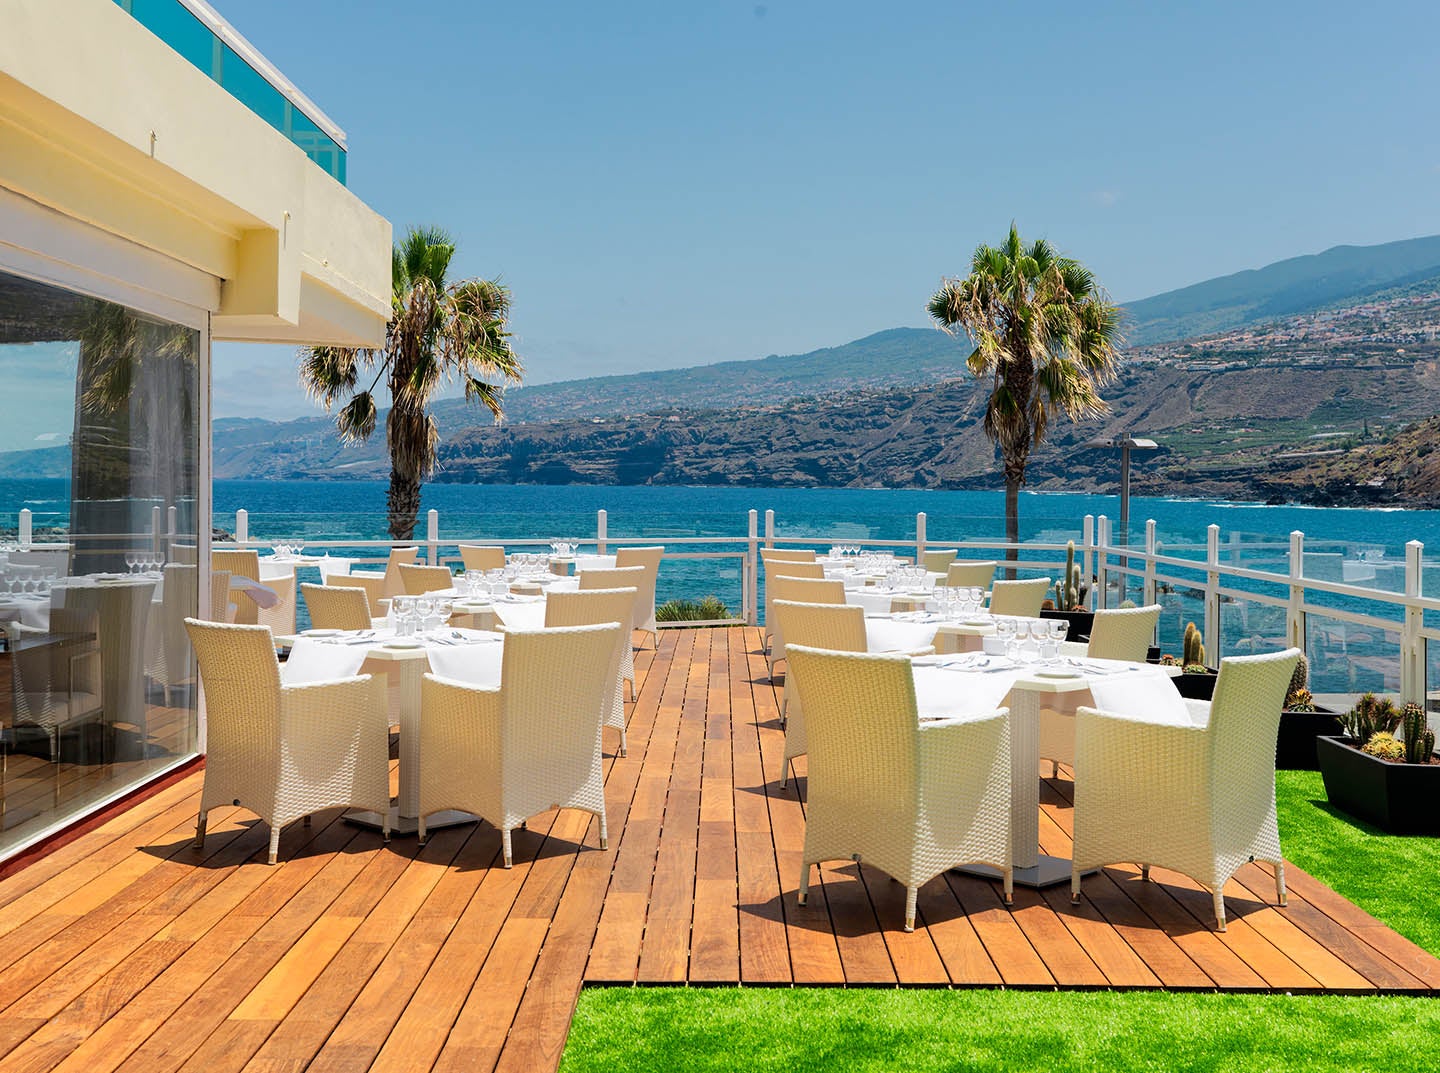 El Drago buffet restaurant with sea views